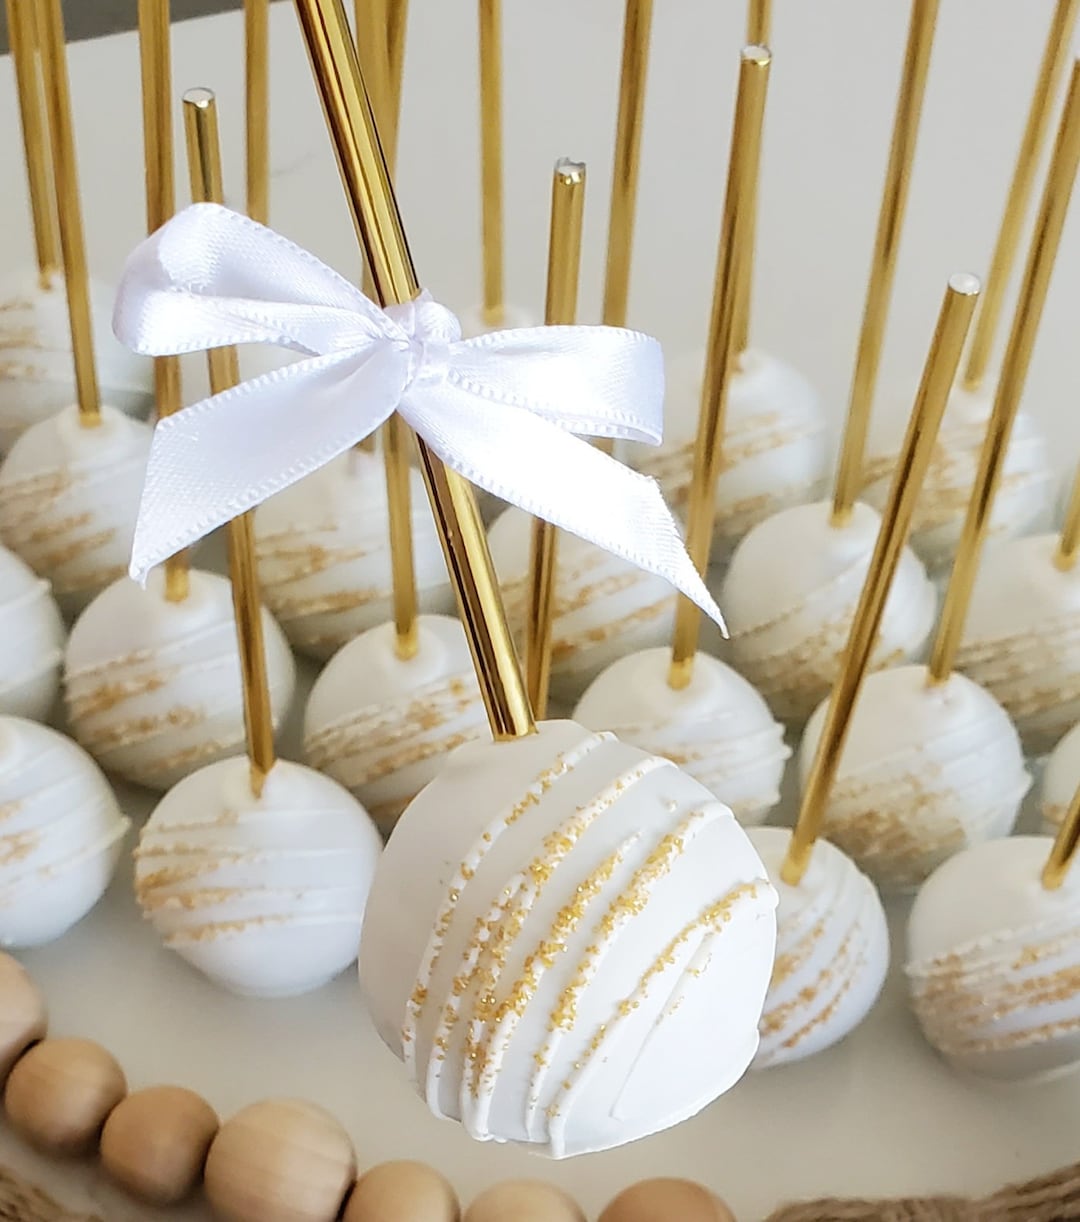 Beige Cake Pop Sticks 4 Flavors Gourmet Birthday Bridal Shower